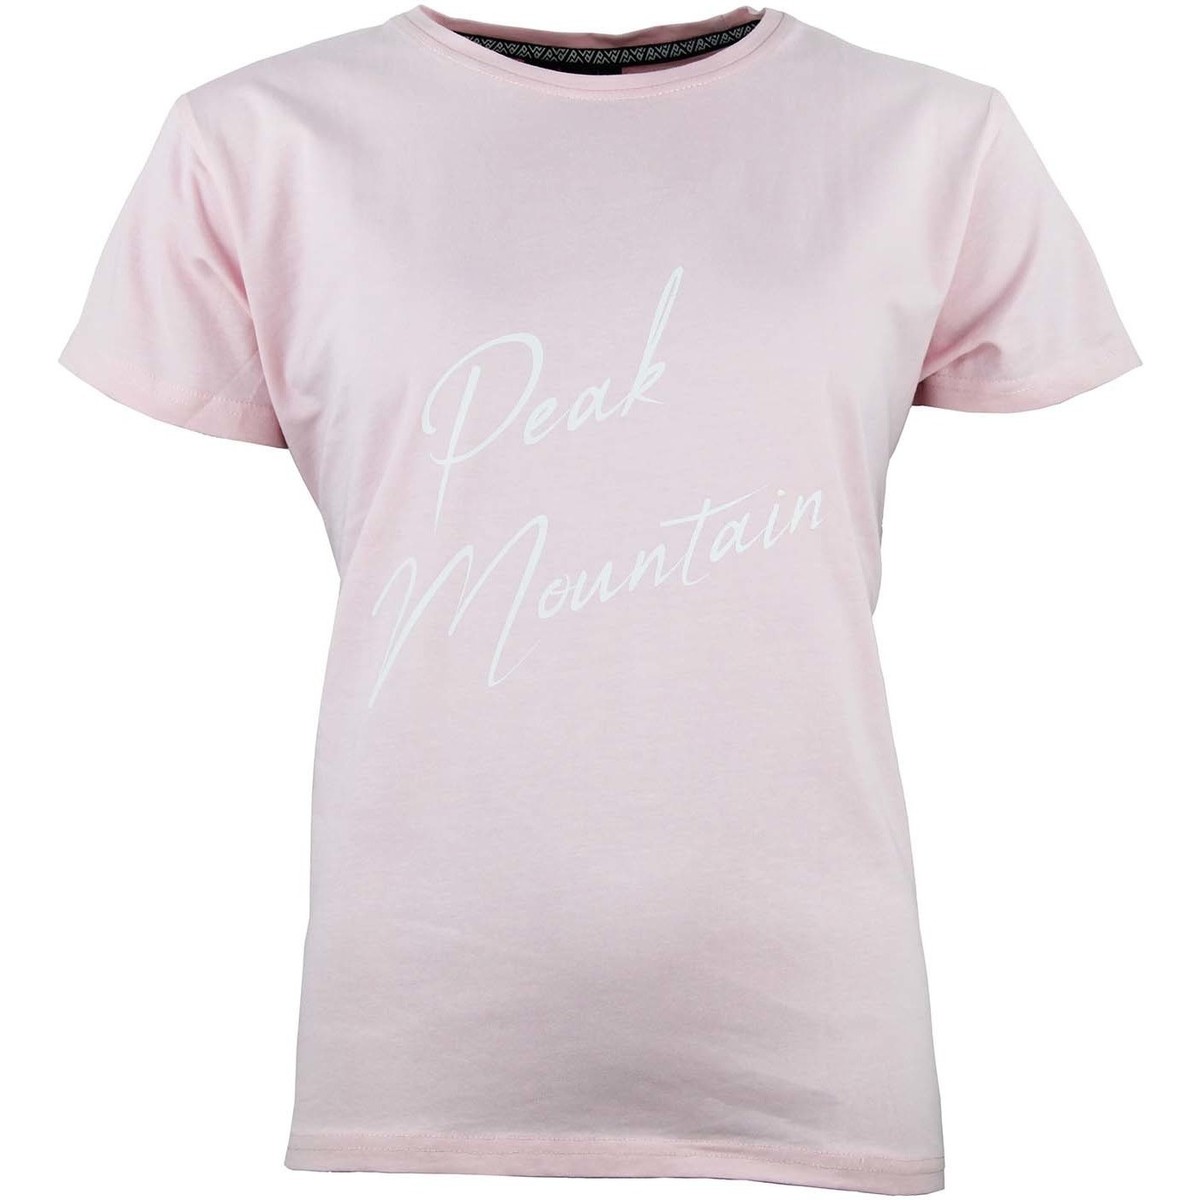 Vêtements Femme T-shirts Couture courtes Peak Mountain T-shirt Couture courtes femme ATRESOR Rose